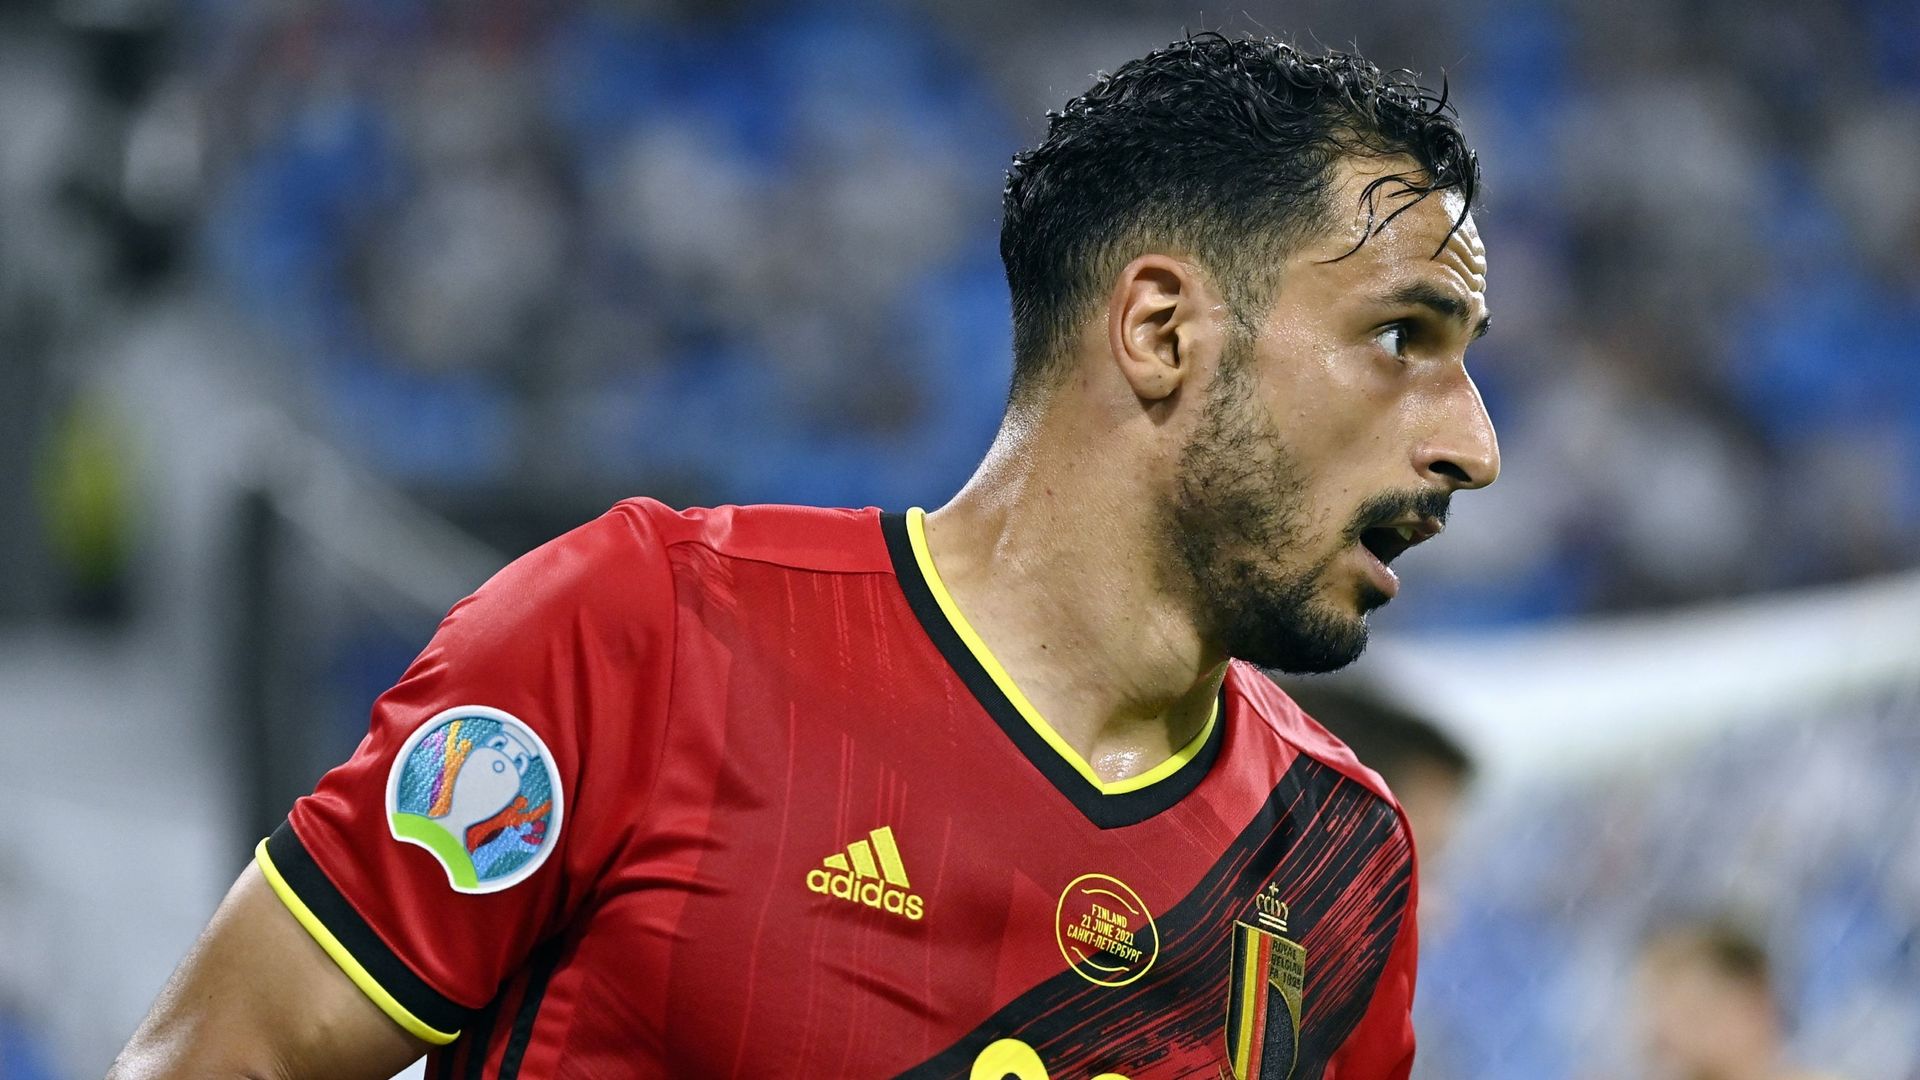 “Dobbiamo voltare pagina”: Nasser El-Shazly chiude ufficialmente la sua carriera con i Devils